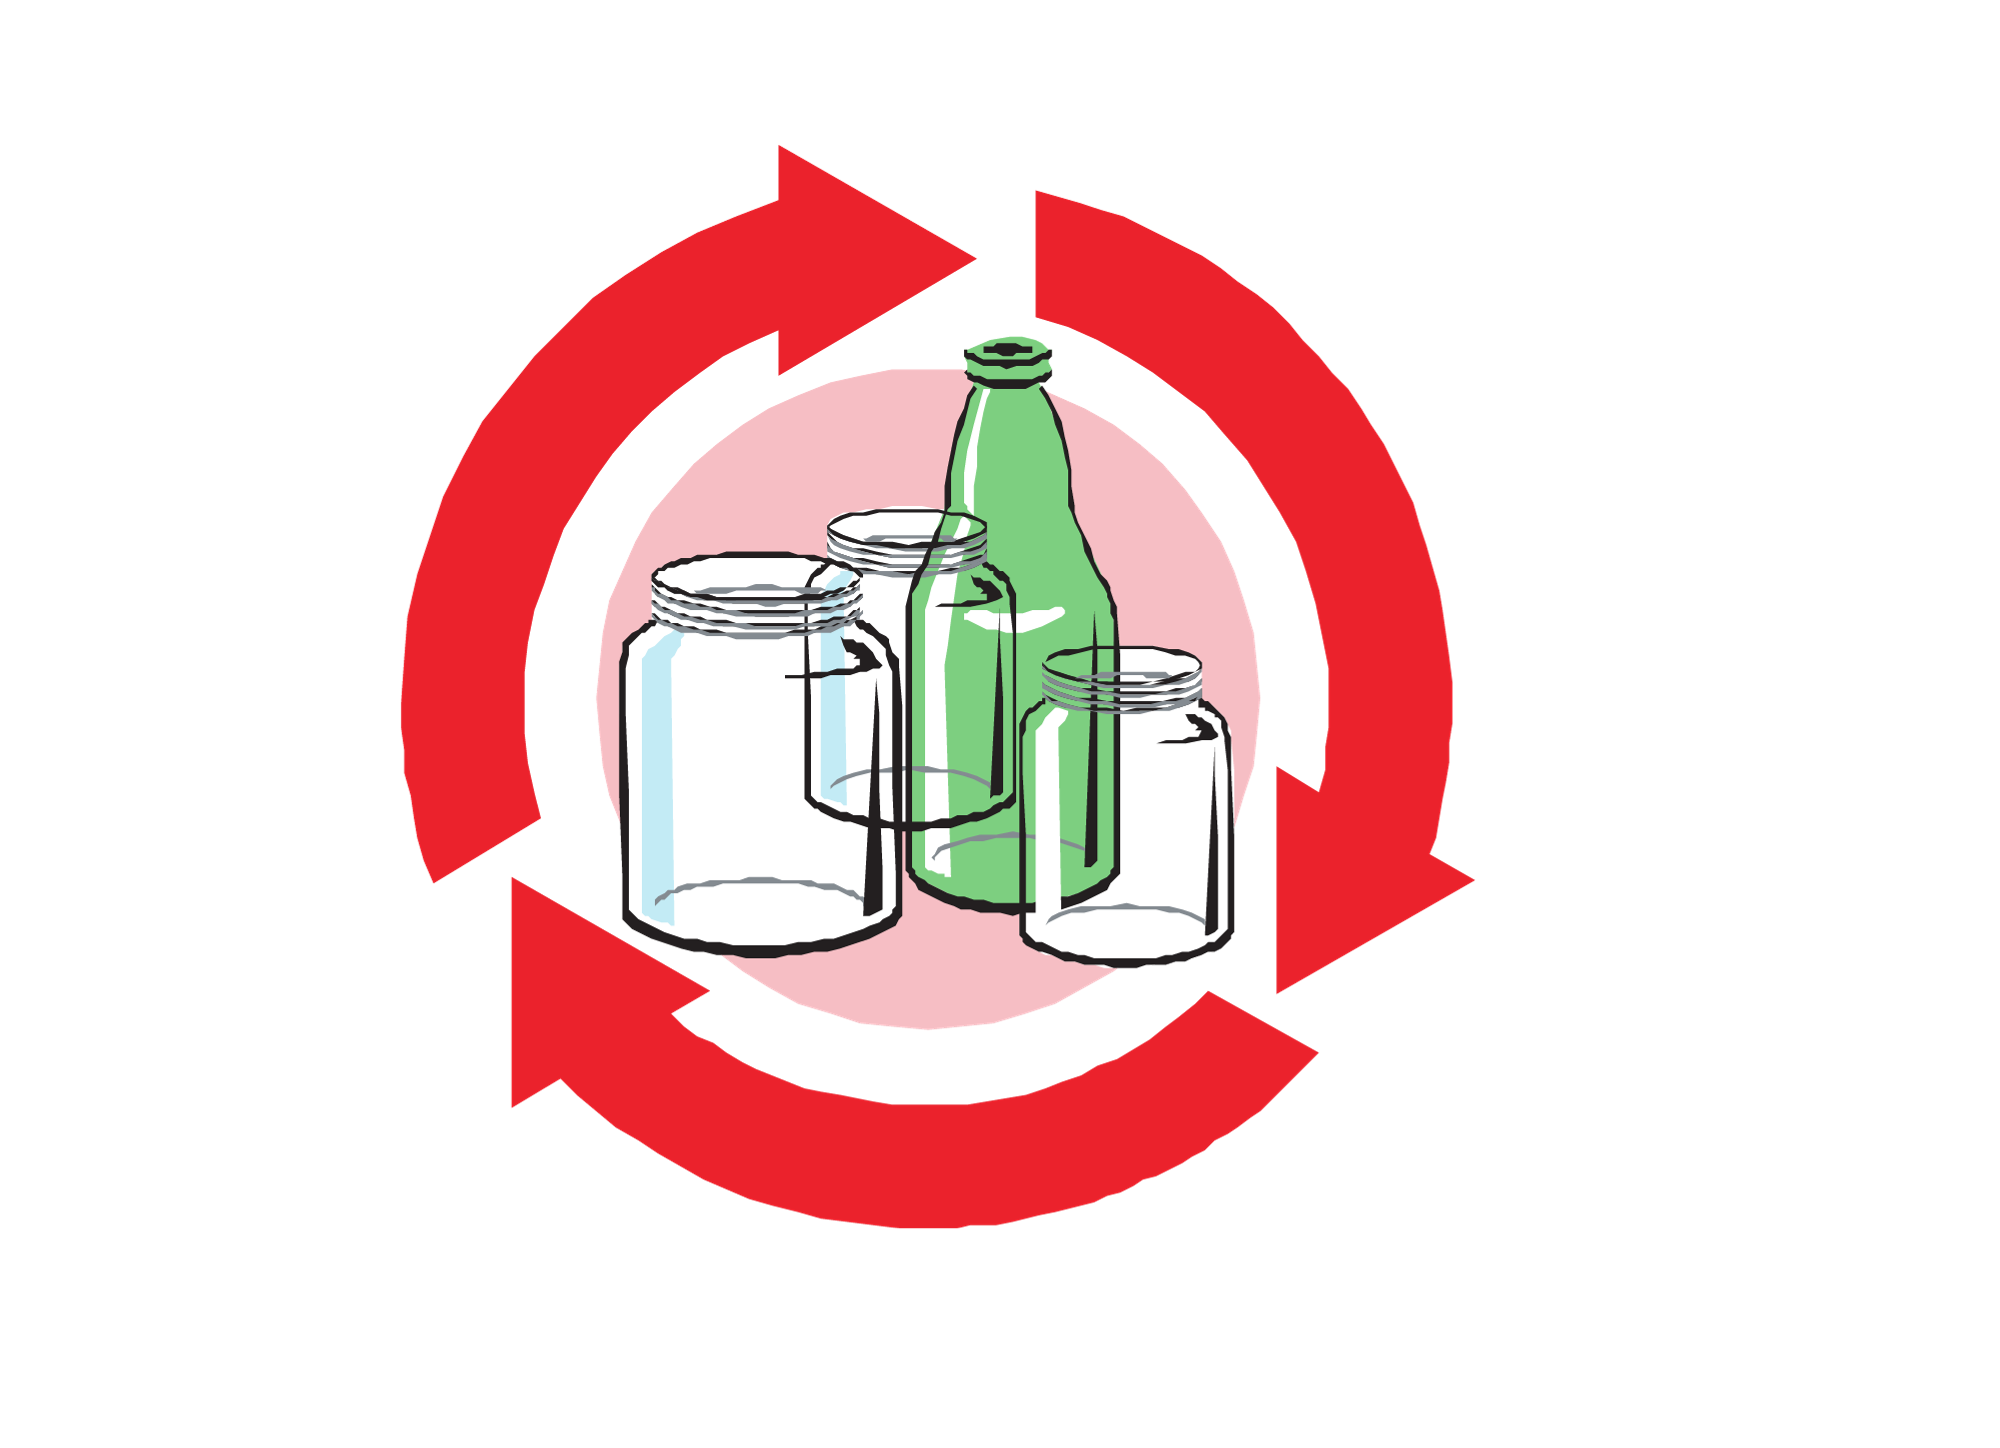 Picto recyclage rouge avec à l'intérieur des pots et bouteilles en verre et plastique